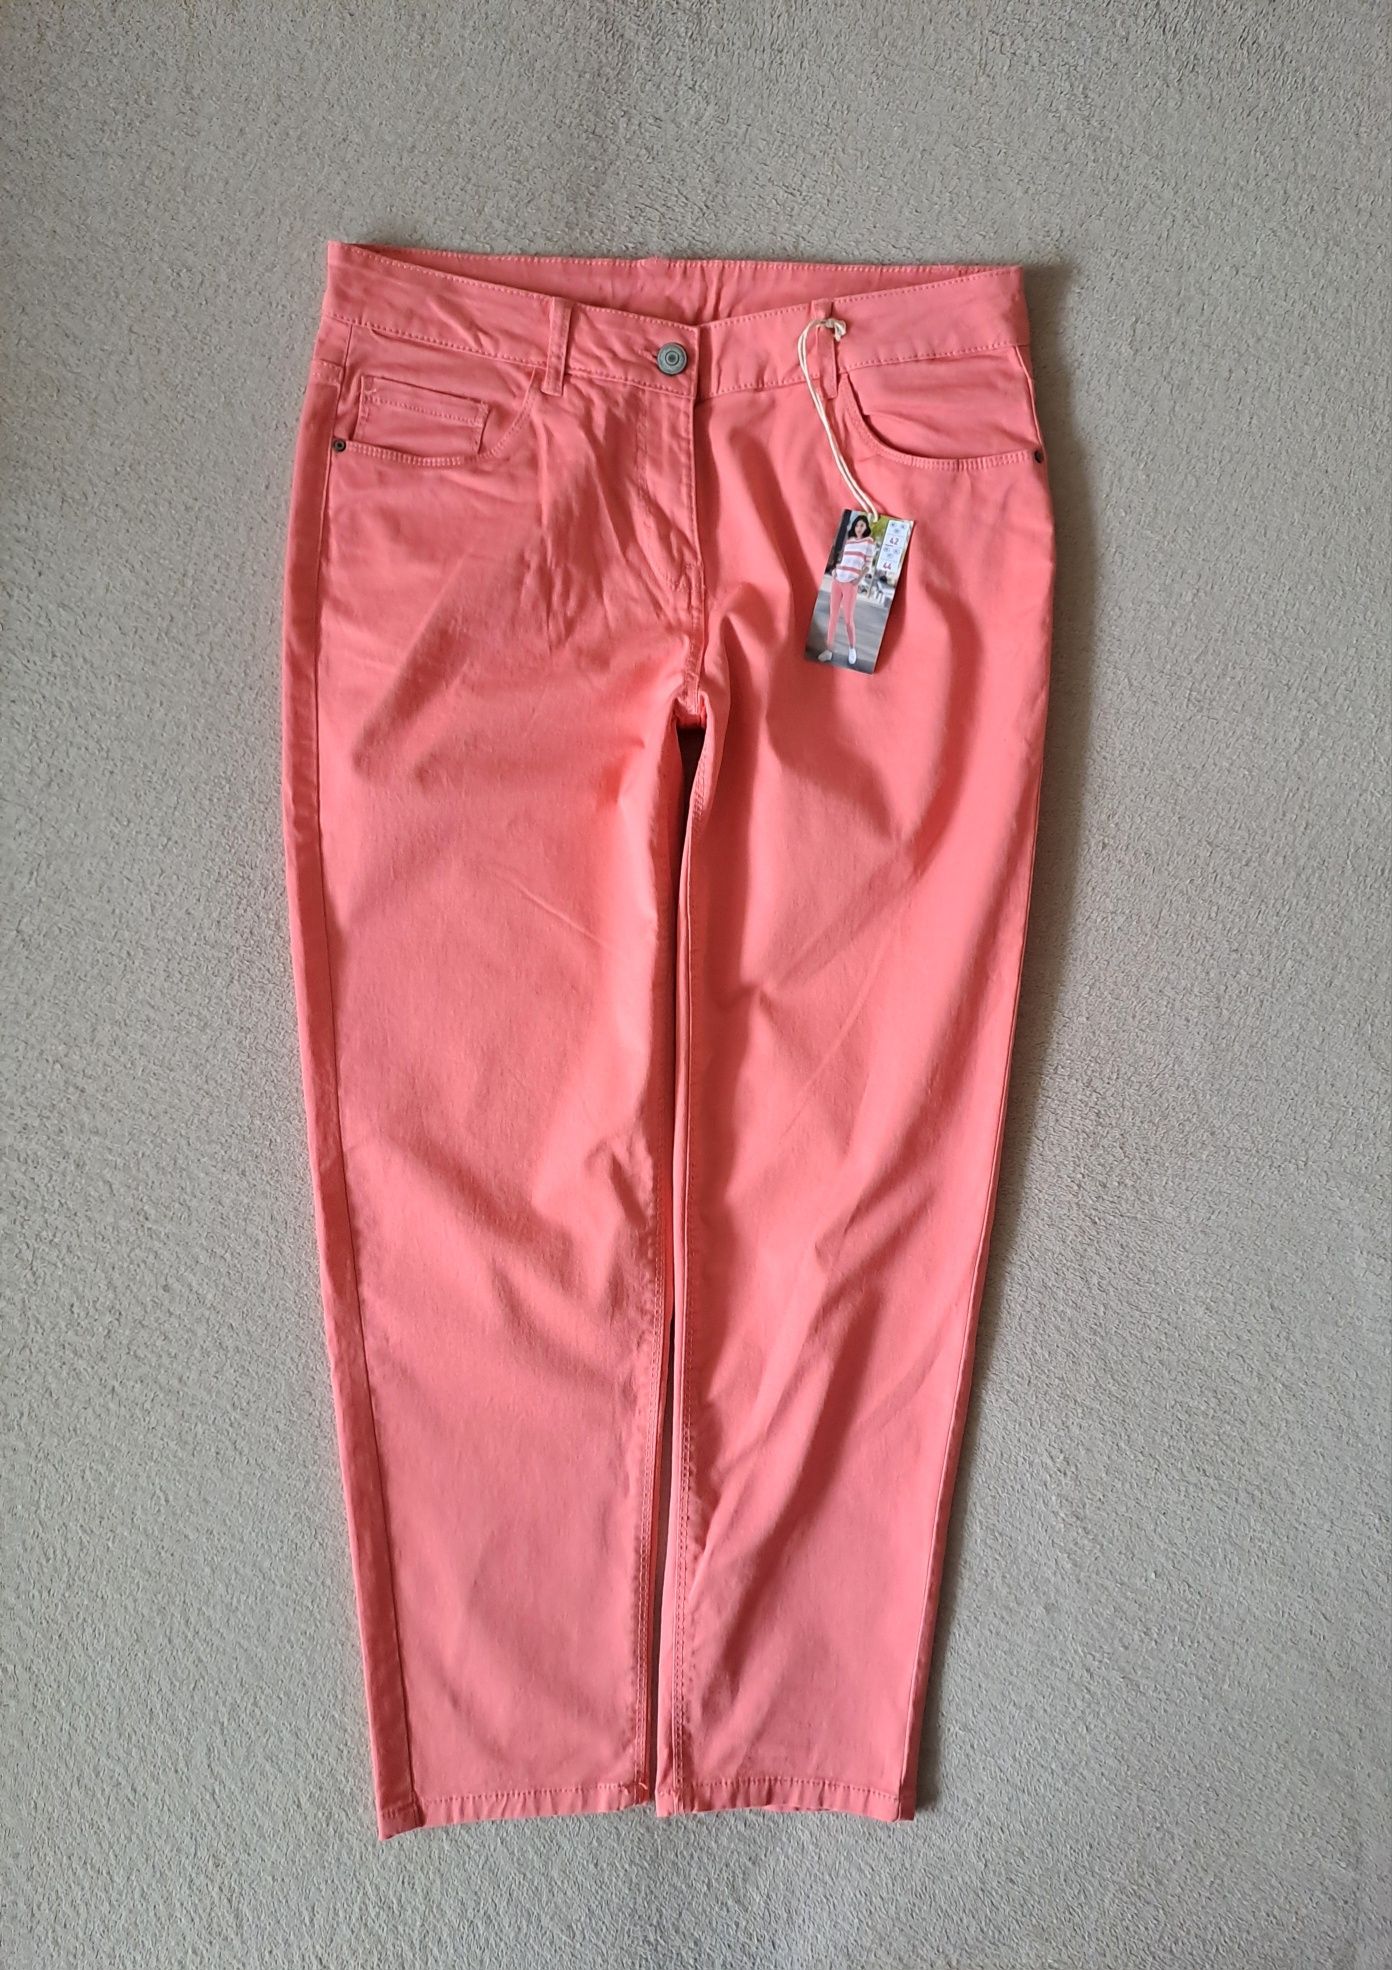 NOWE spodnie UP2FASHION roz. 44 styl klasyka moda komfort